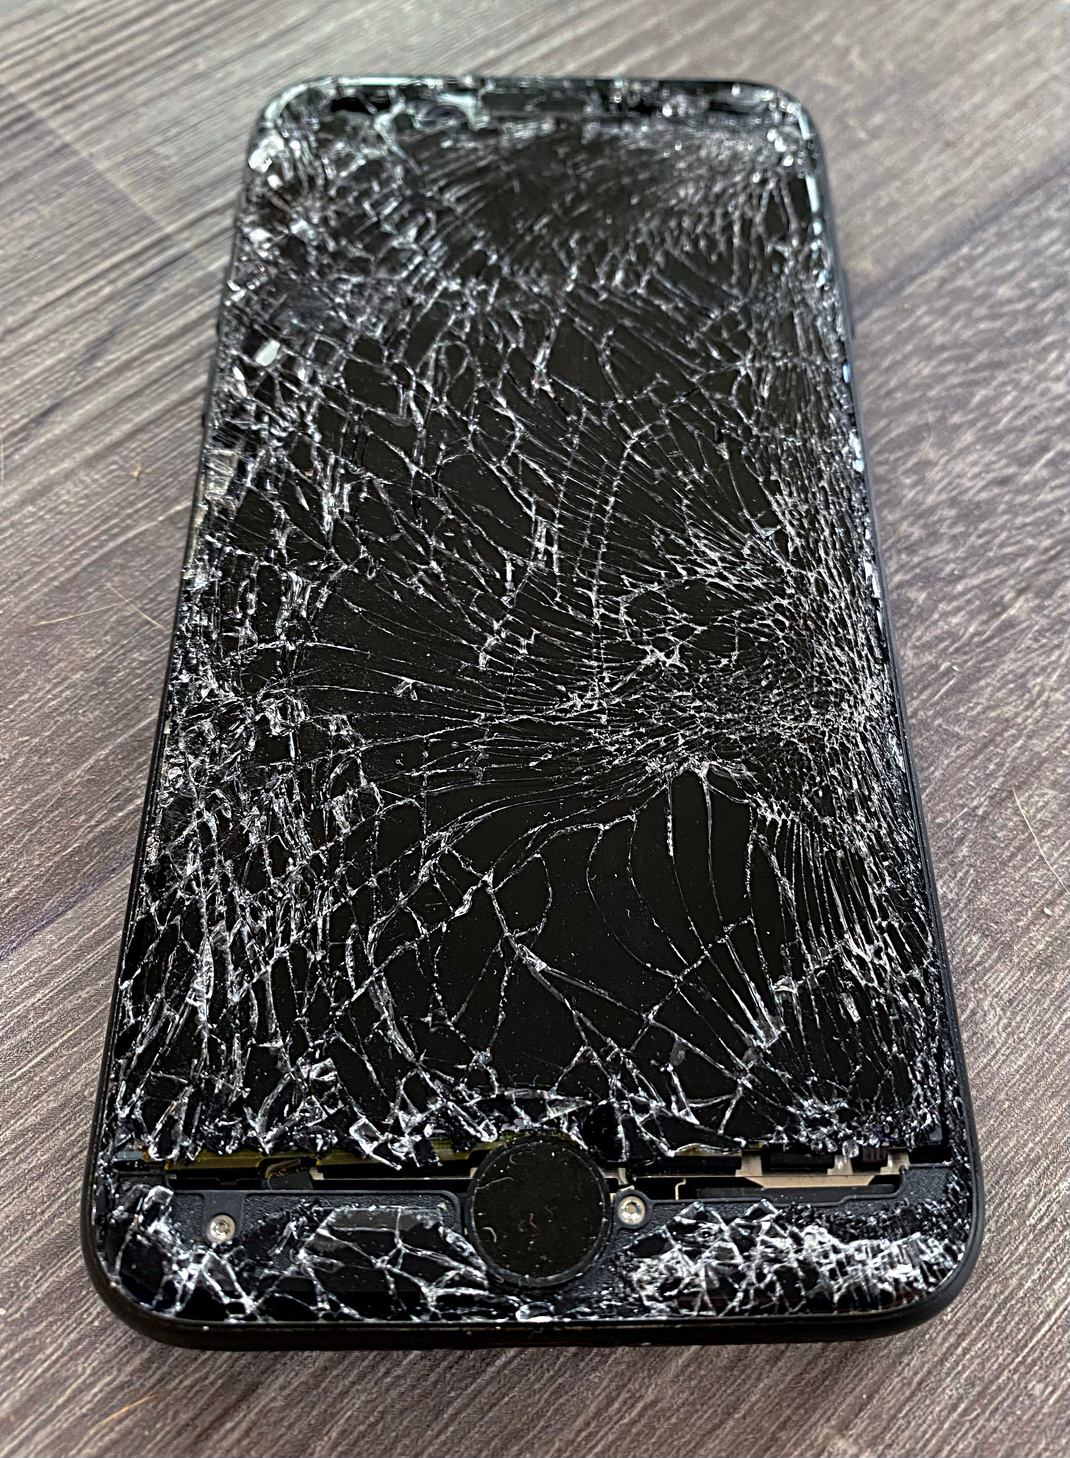 Broken IPhone